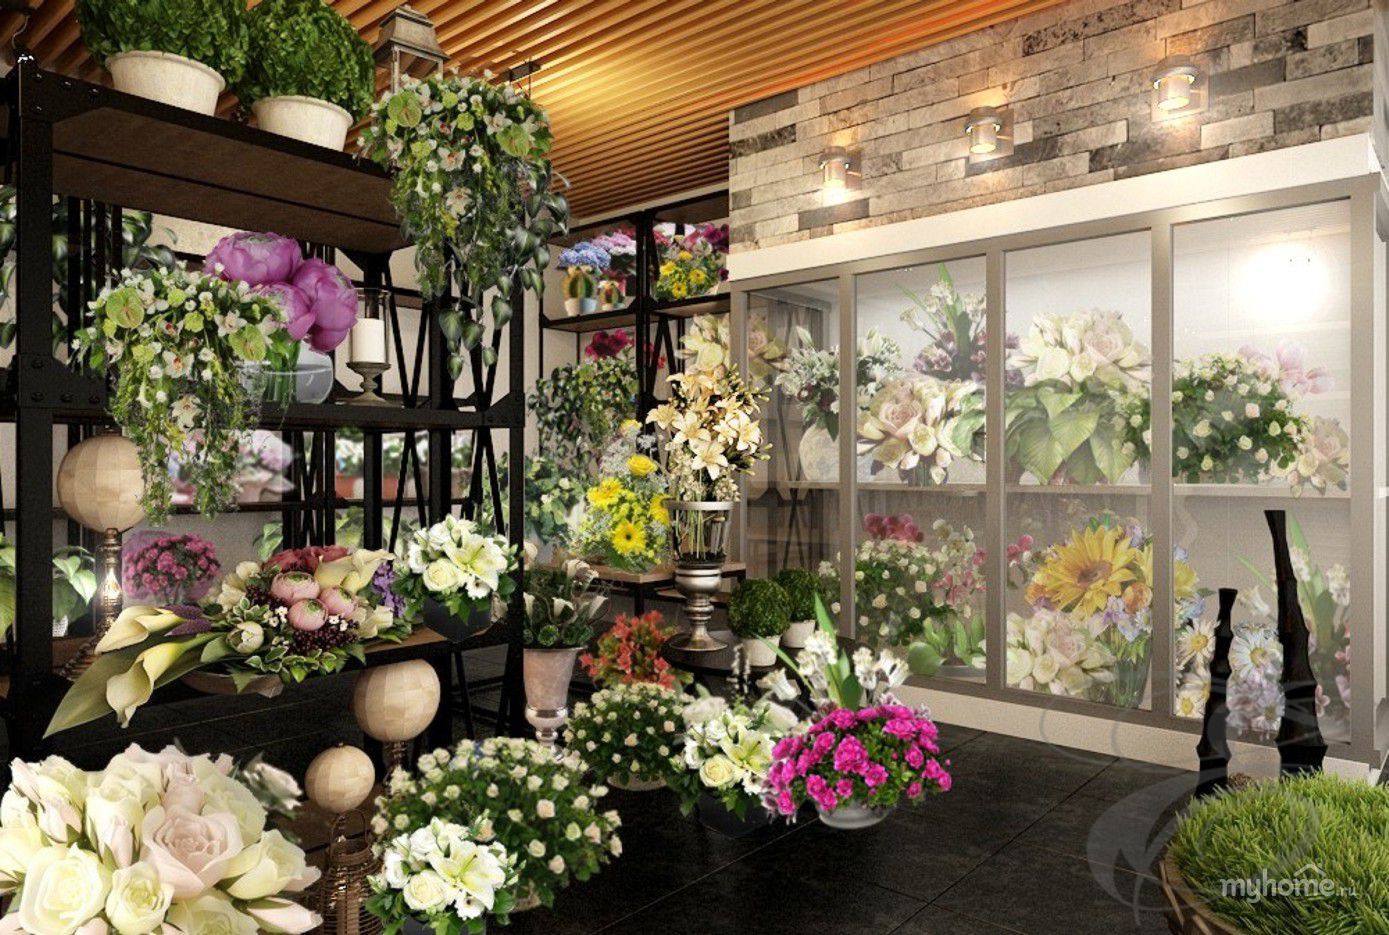 Цветы ассортимент в цветочном магазине фото